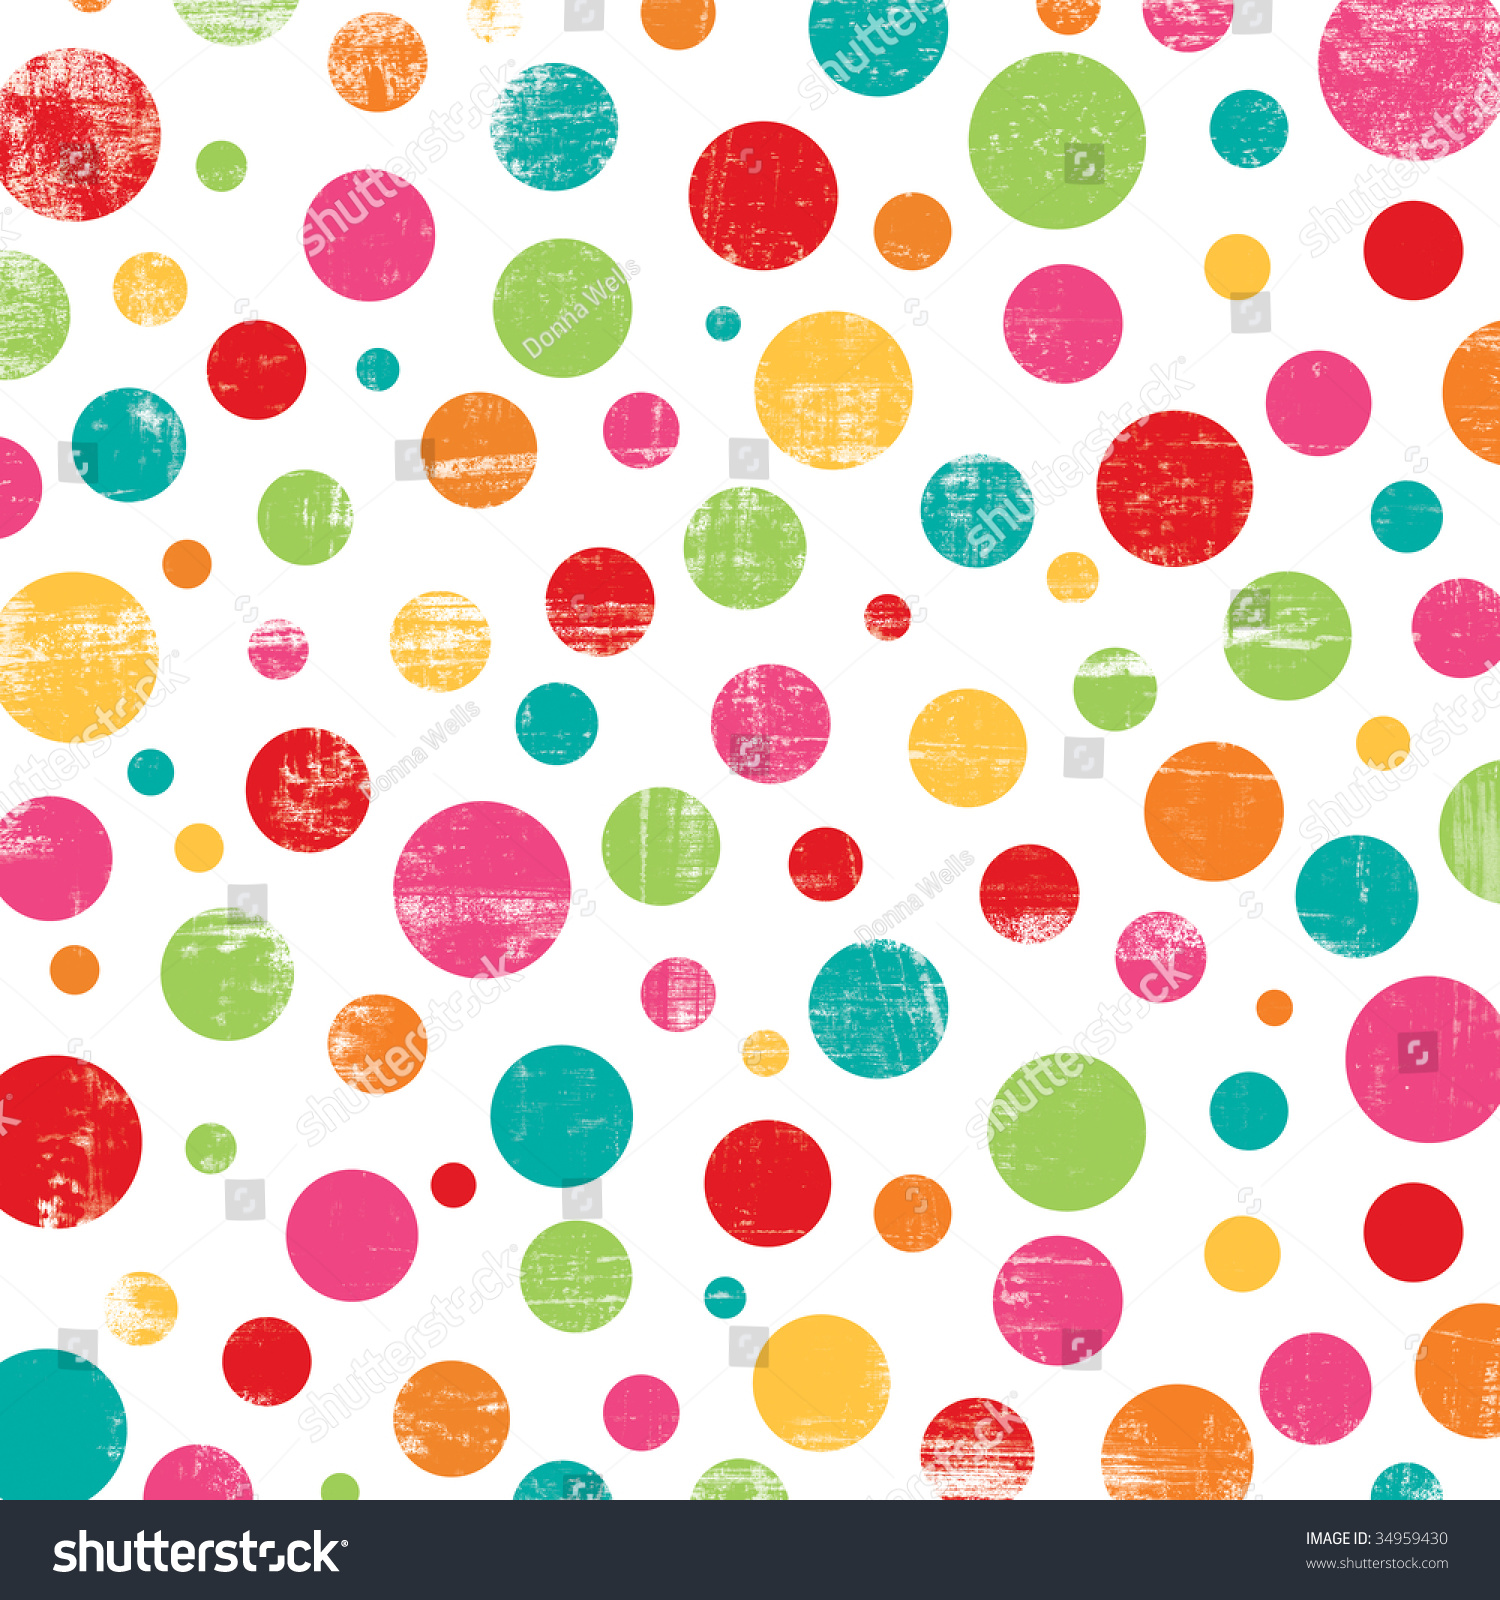 Colorful Dot Design Stock Illustration 34959430 - Shutterstock